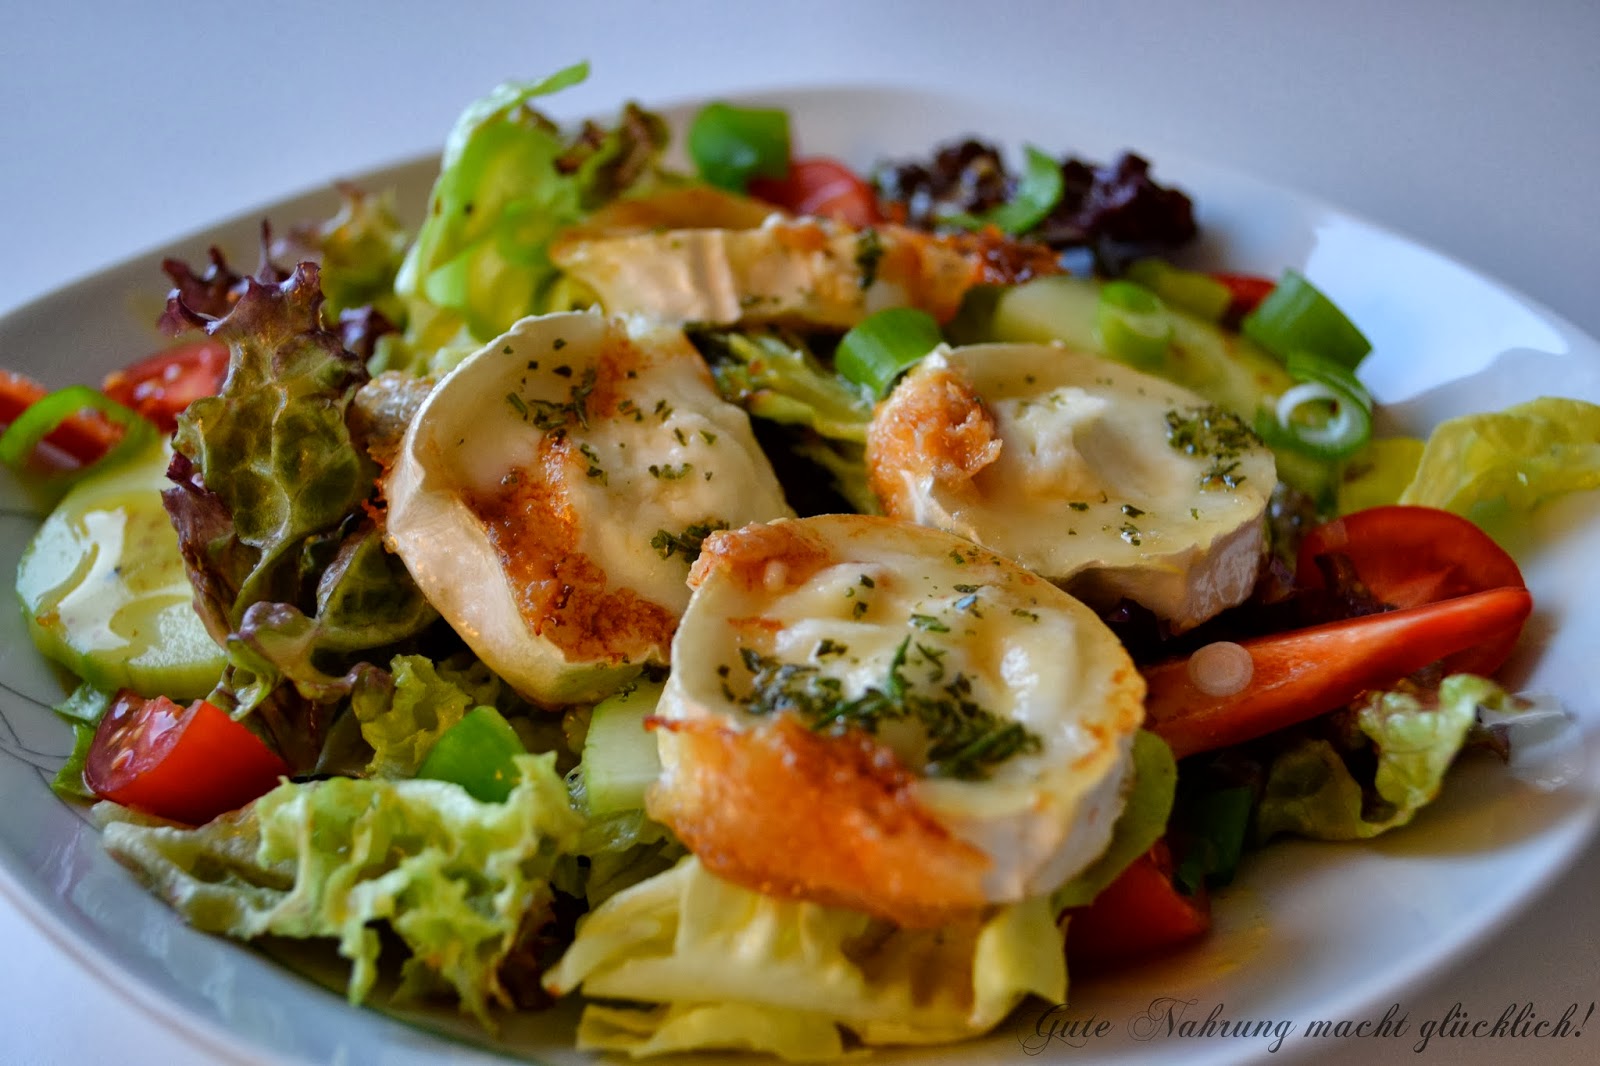 Gute Nahrung macht glücklich : Salat mit gebratenem Ziegenkäse und ...